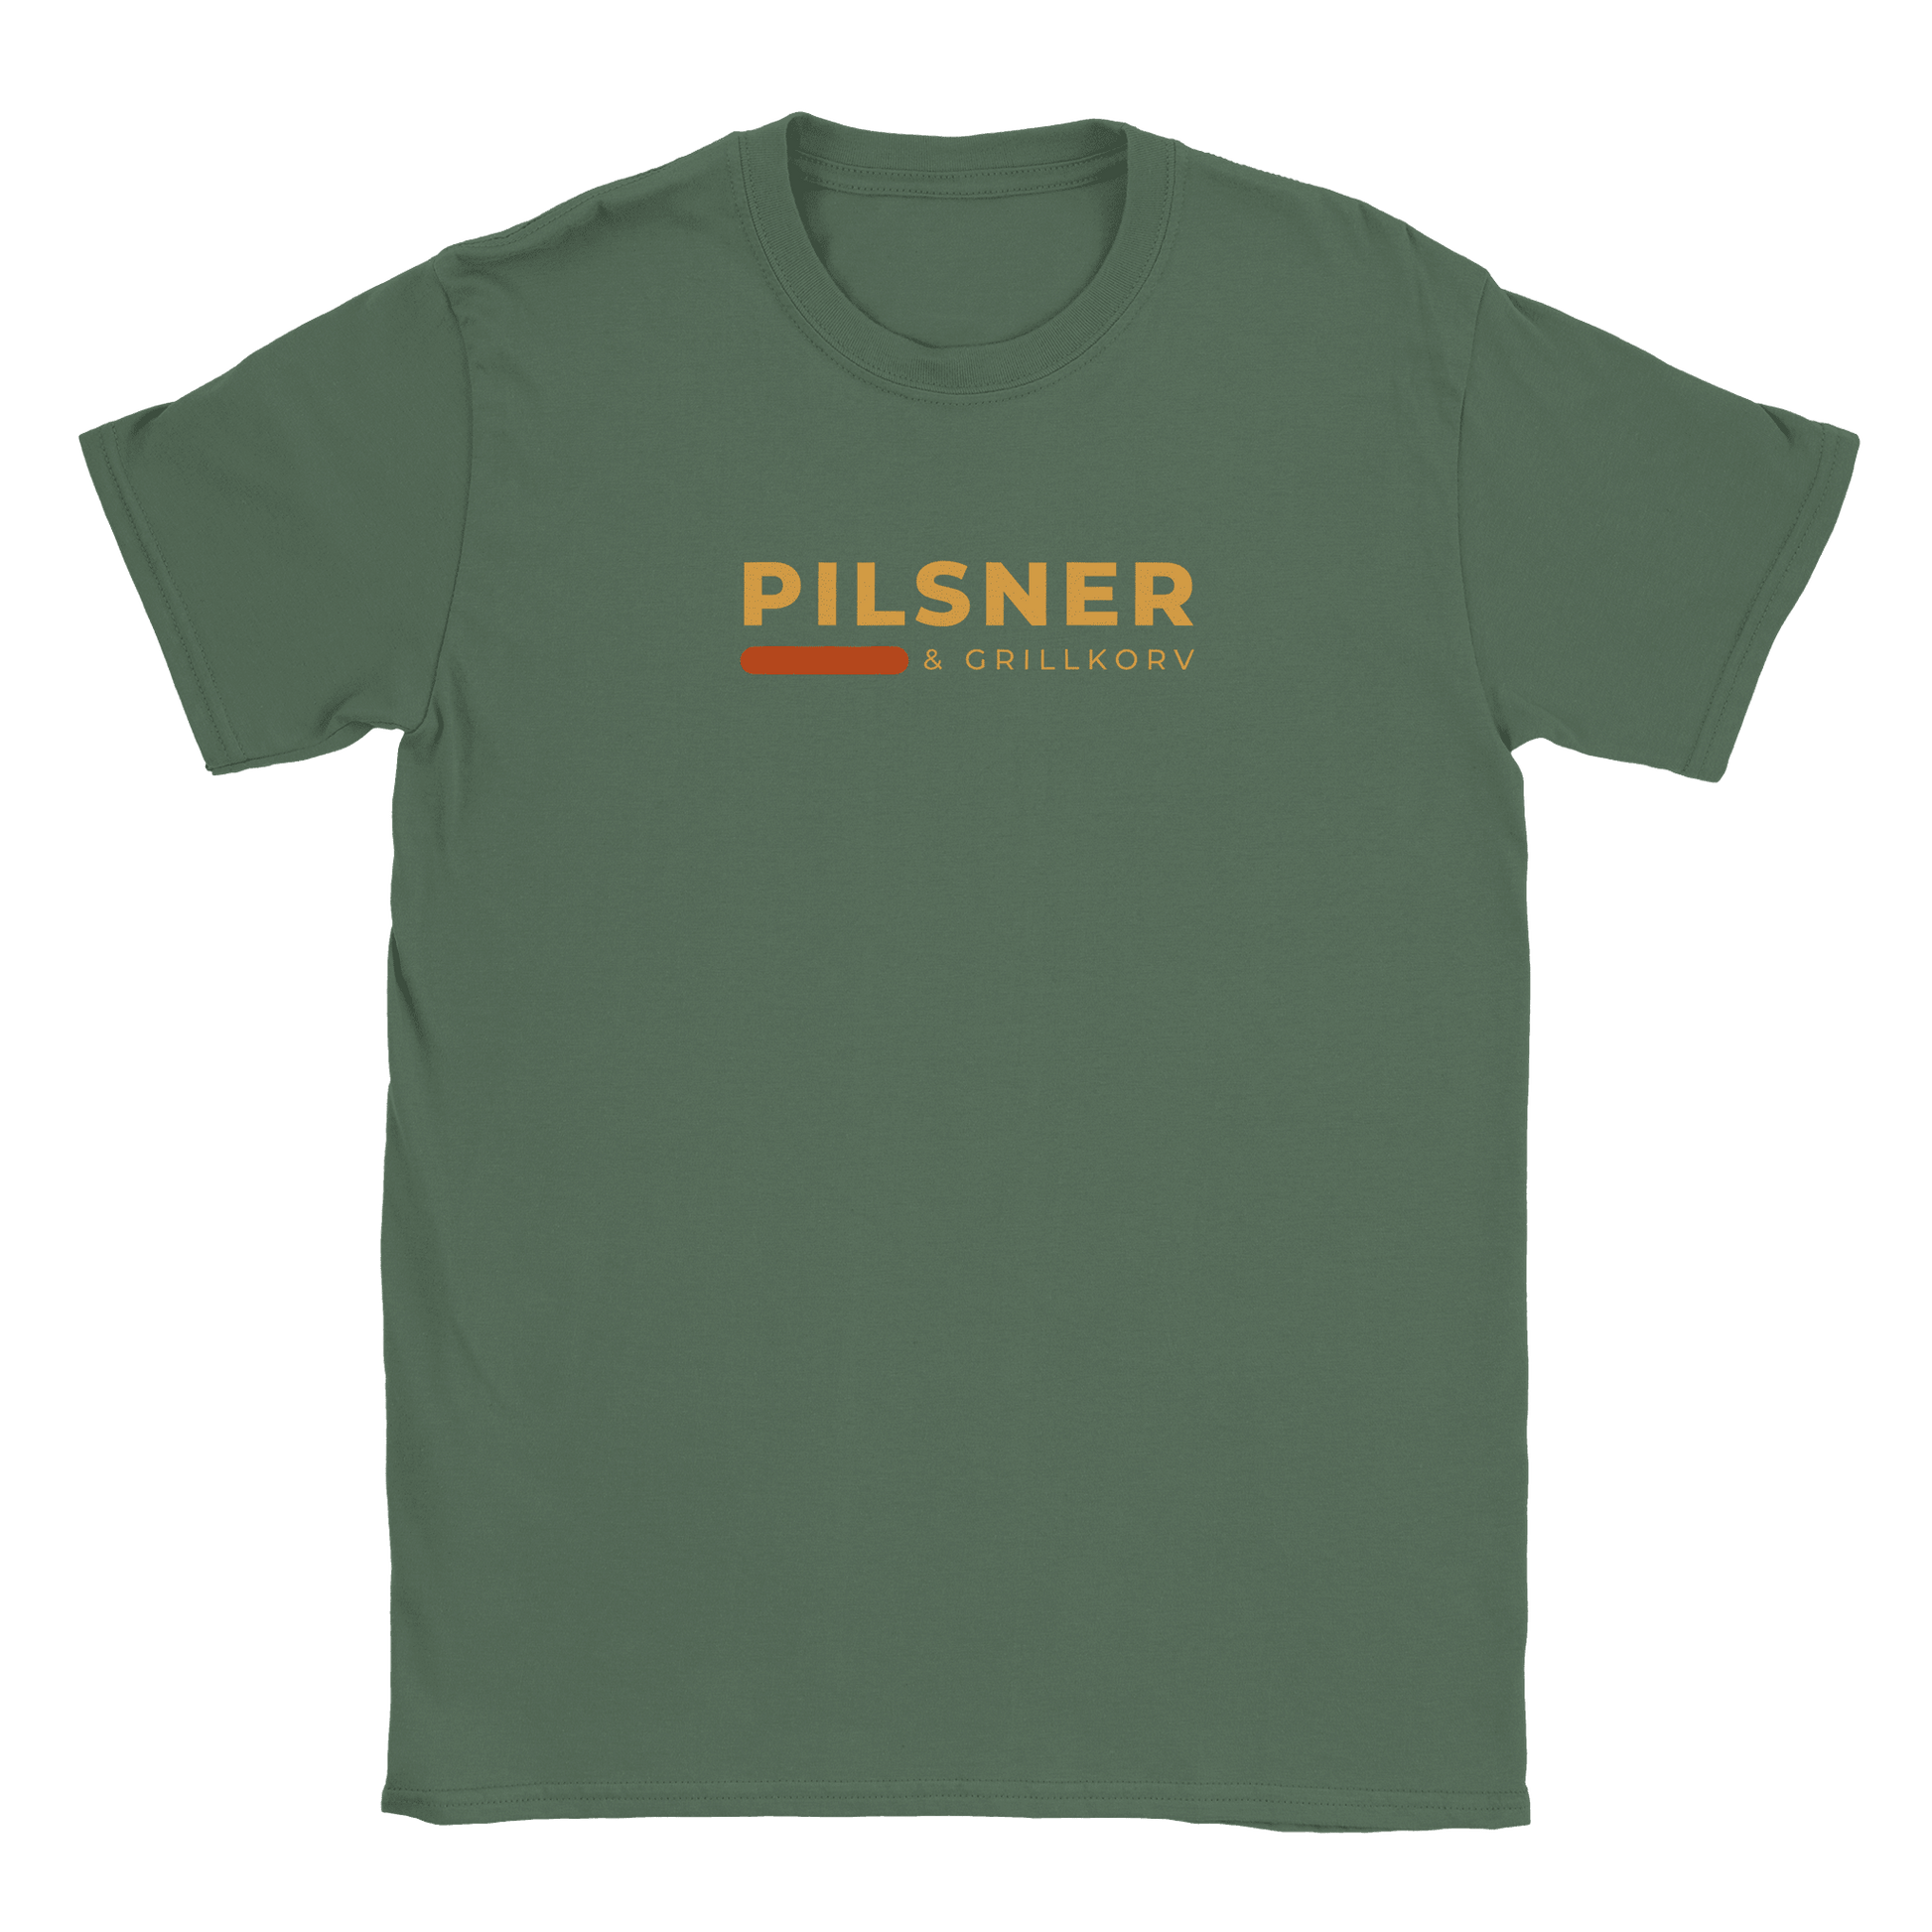 Pilsner och grillkorv - T-shirt Militärgrön